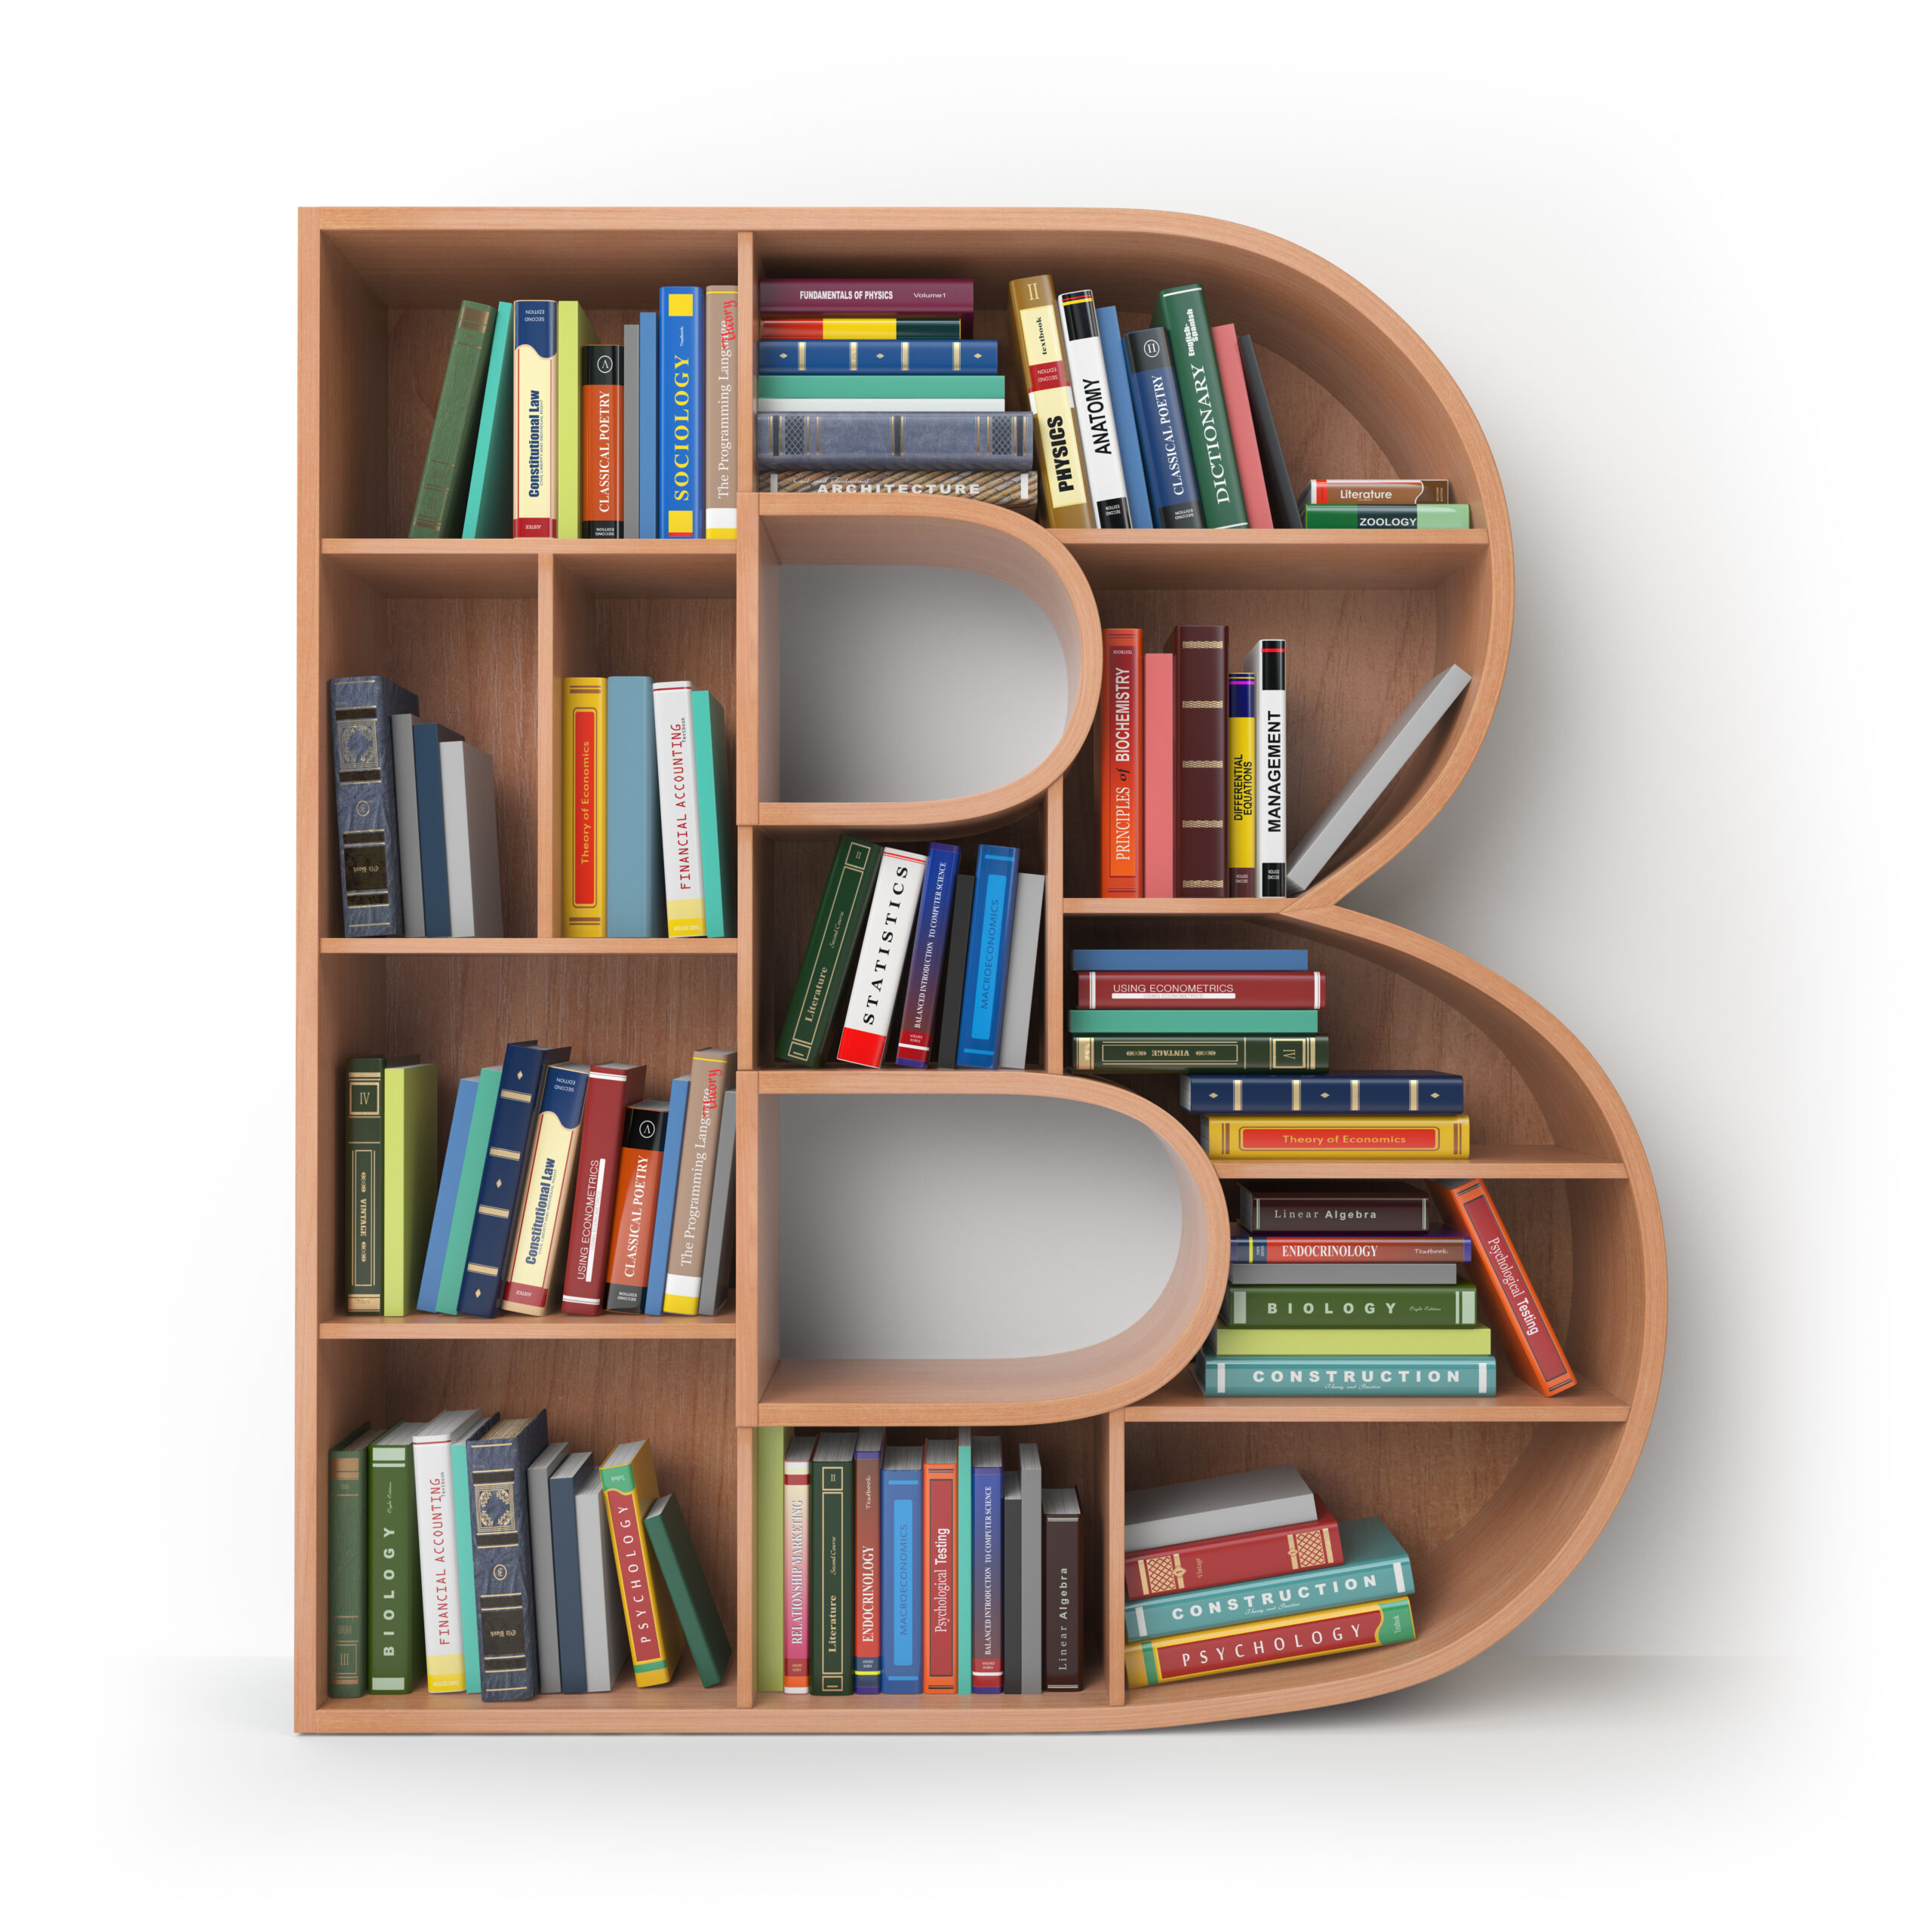 image of bookshelf full of books shaped like the letter b.